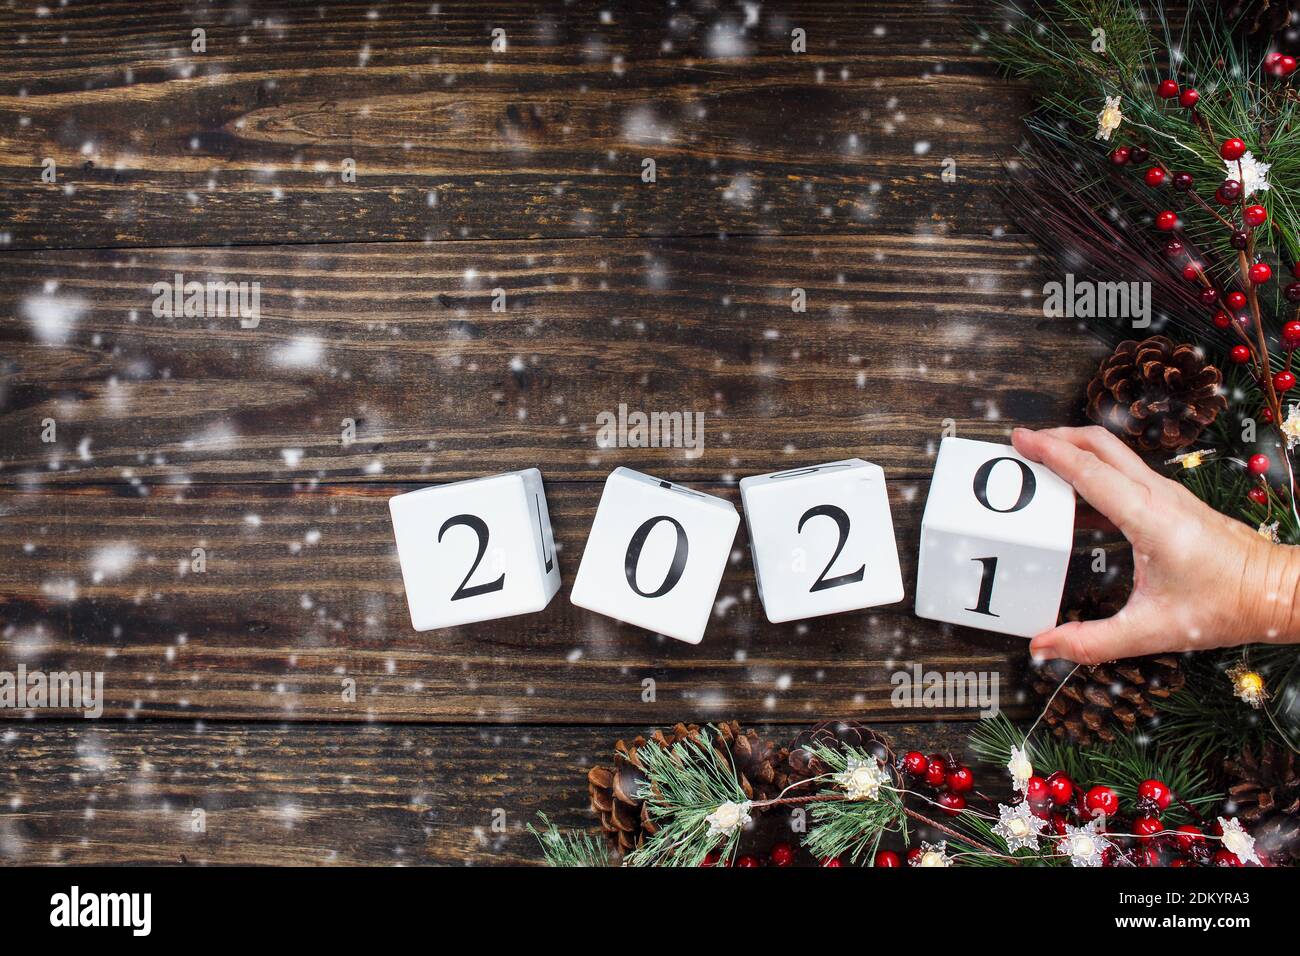 La mano de la mujer volteando los 2021 bloques de calendario de madera de año Nuevo a 2020. Luces de árbol de Navidad, ramas de pino, bayas rojas de invierno y nieve. Vista superior. Foto de stock